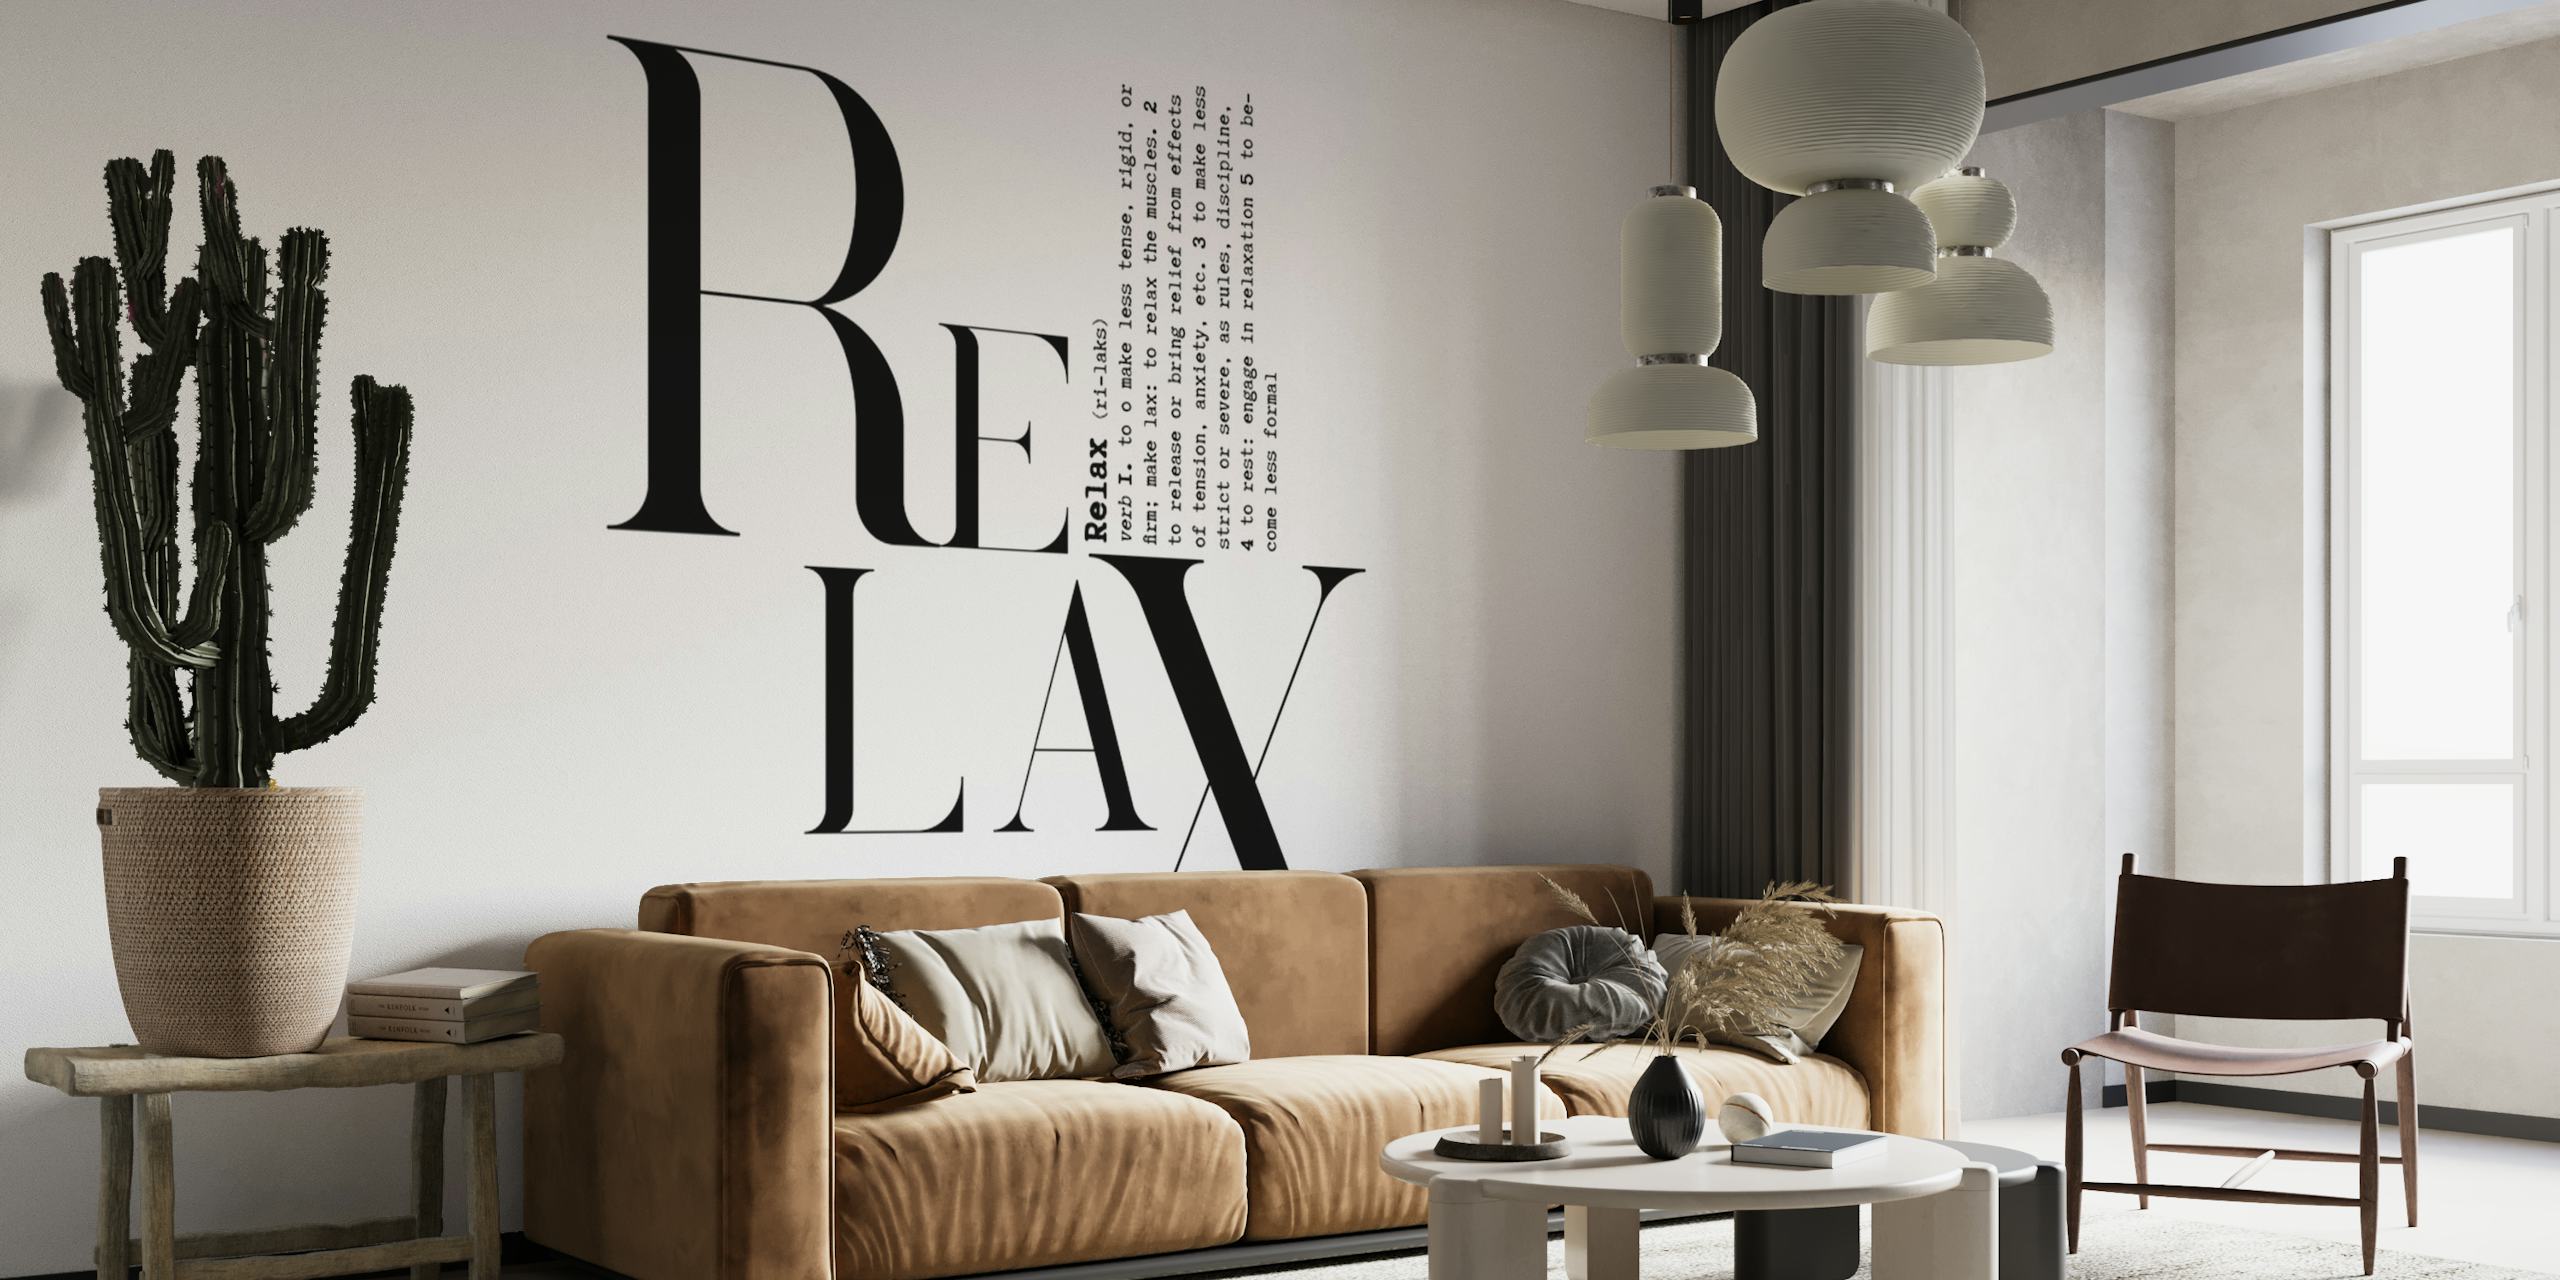 Svart-hvitt typografisk veggmaleri med ordet 'RELAX' i en kreativ skrift